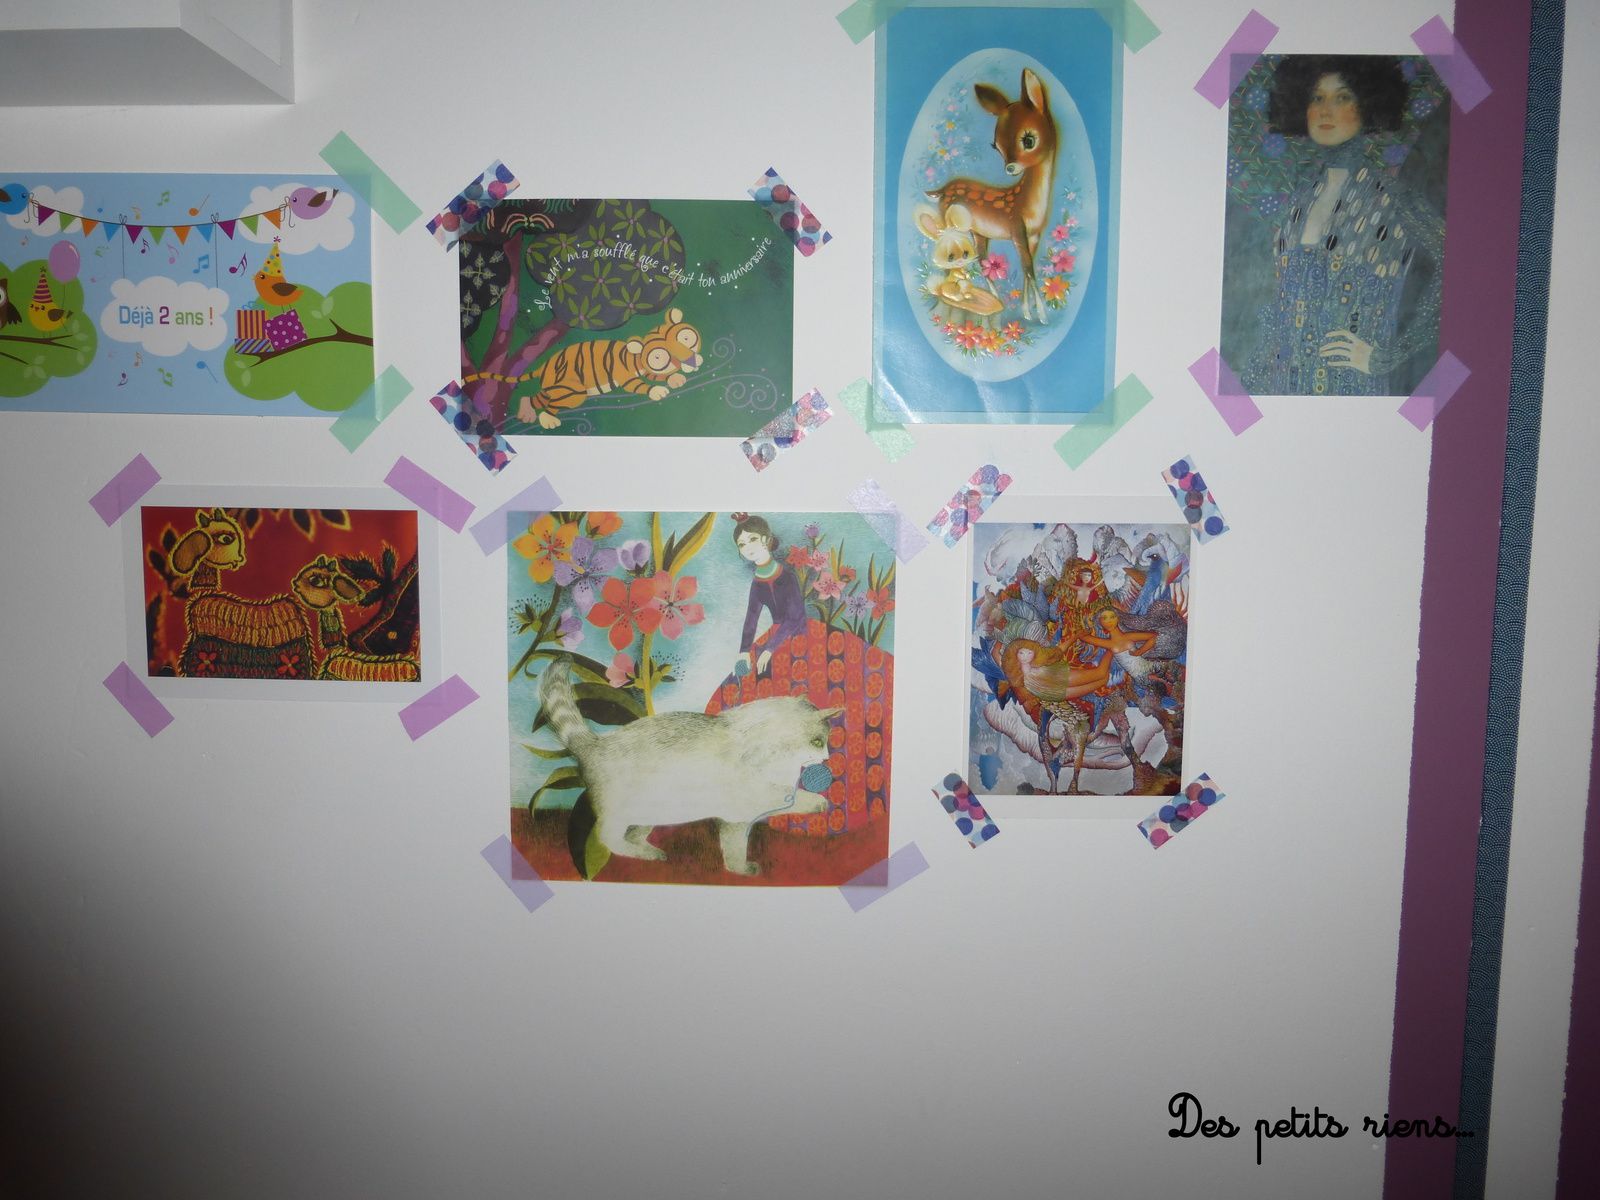 En haut à gauche, la carte des 2 ans envoyée par Elfe.